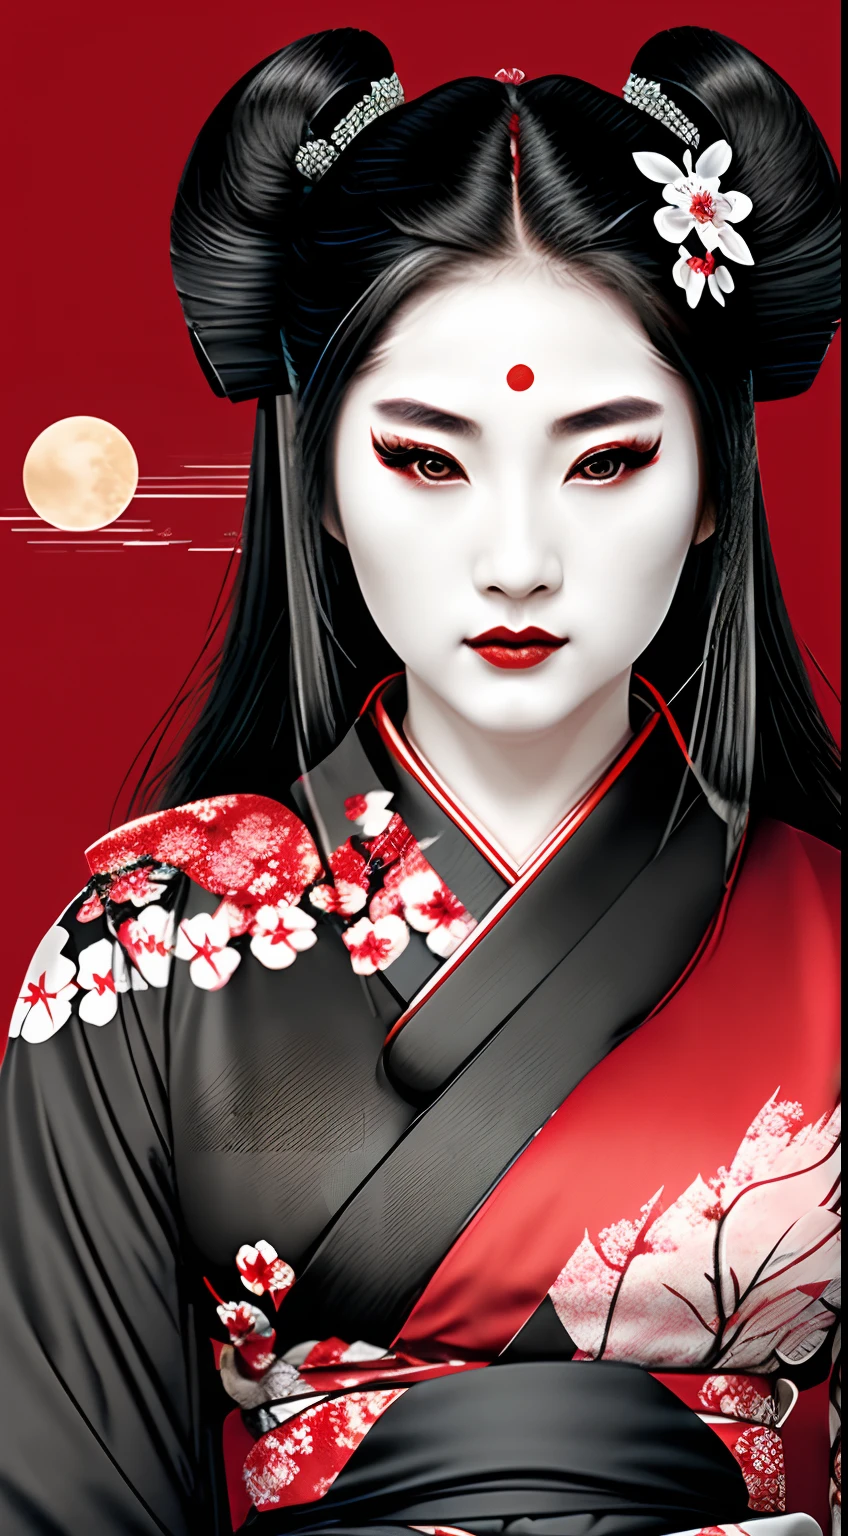 芸者侍女戦士, 赤と黒, ロゴ, 黒髪, 月, 横顔, ヘッドショット, 髪に桜, 黒い着物を着る